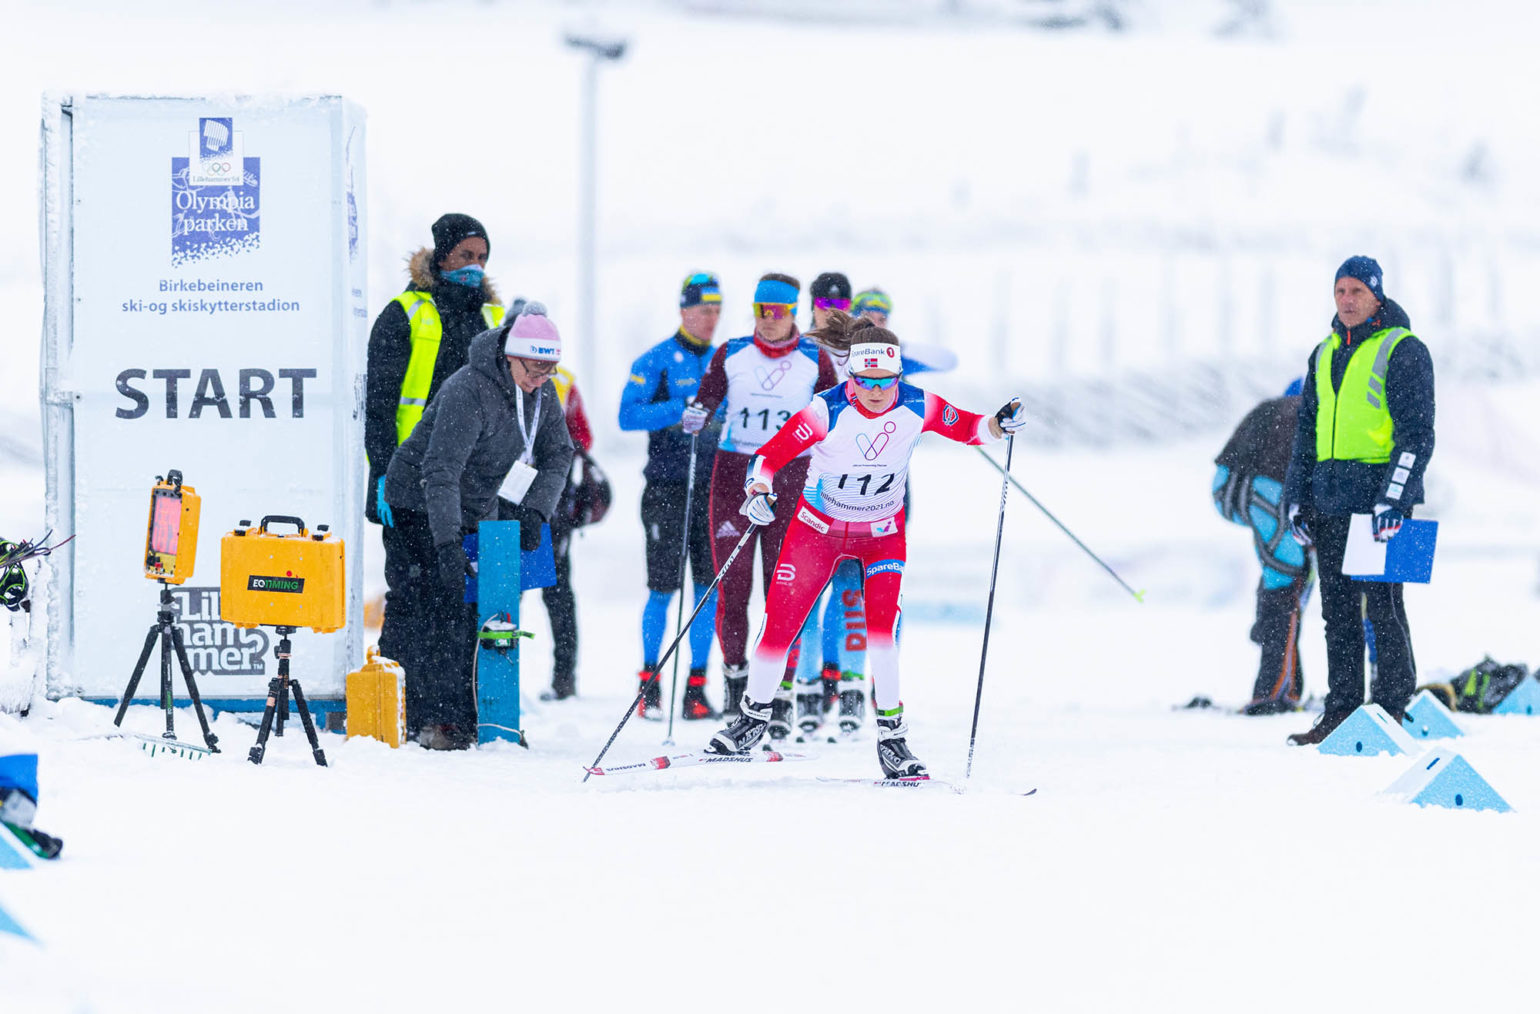 Vilde Nilsen går ut fra start i Olympiaparken på Lillehammer i snøvær.